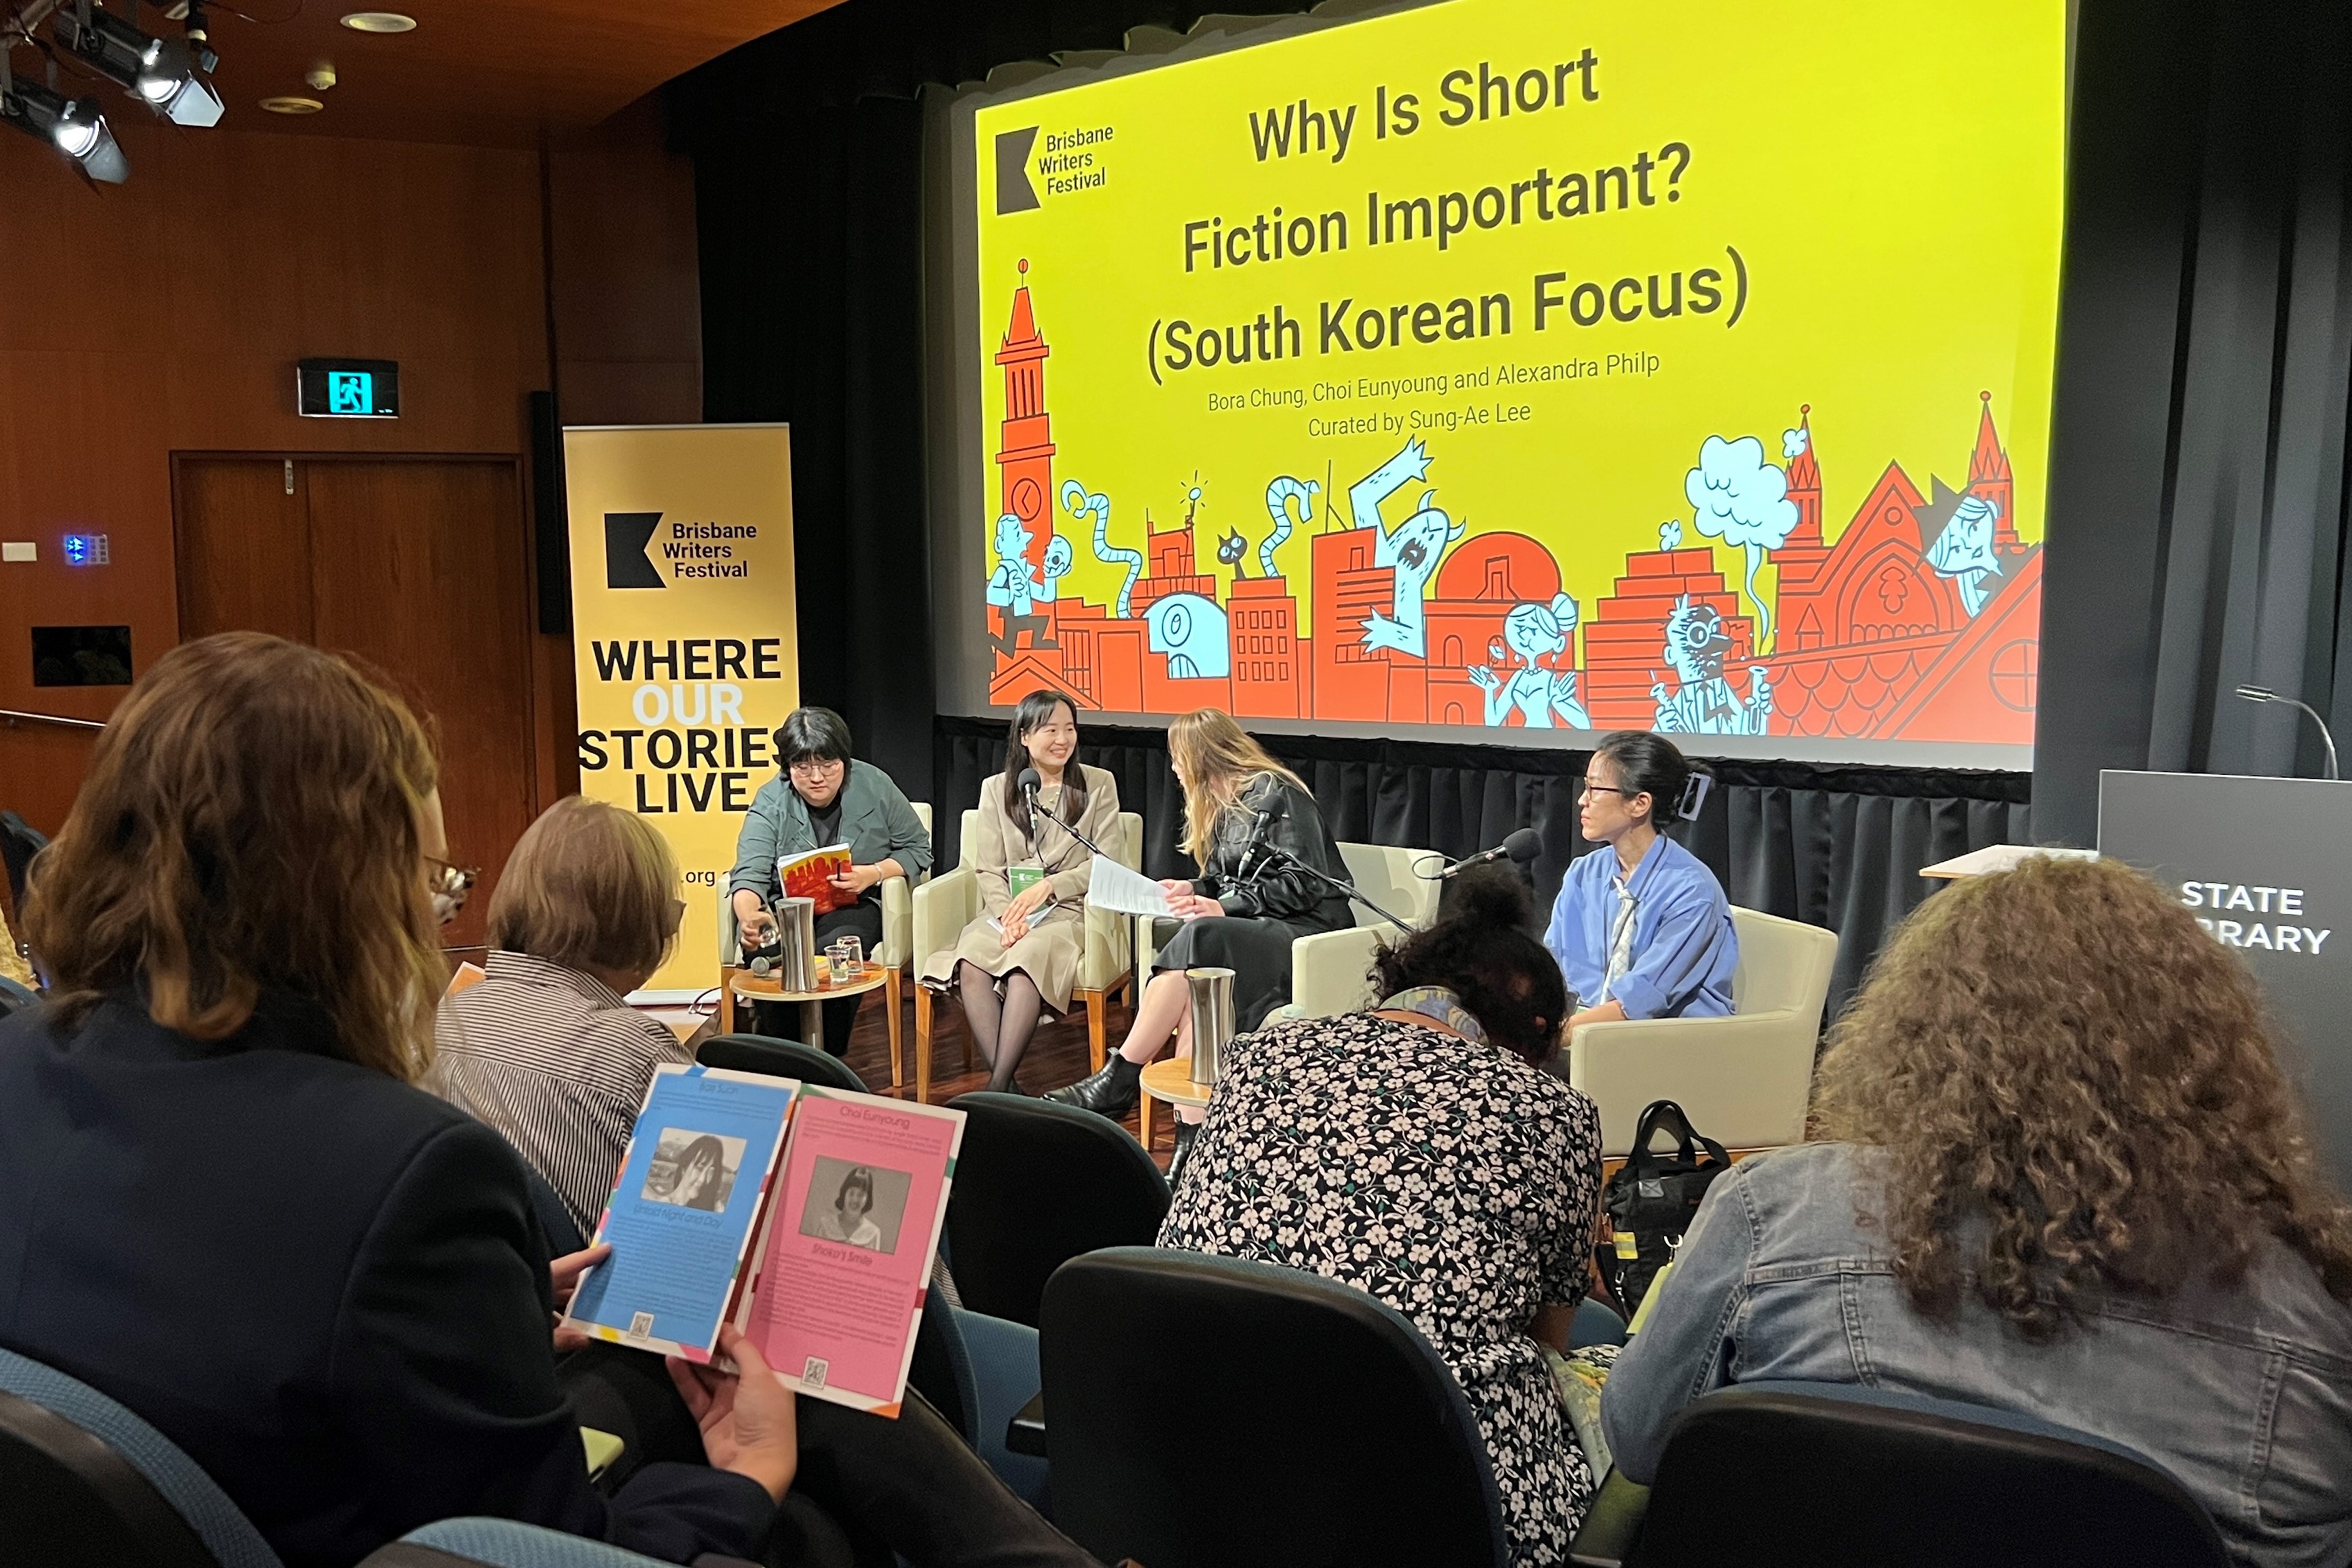  <단편 소설은 왜 중요한가?>에서 한국 작가 소개 브로셔를 보고 있는 관객